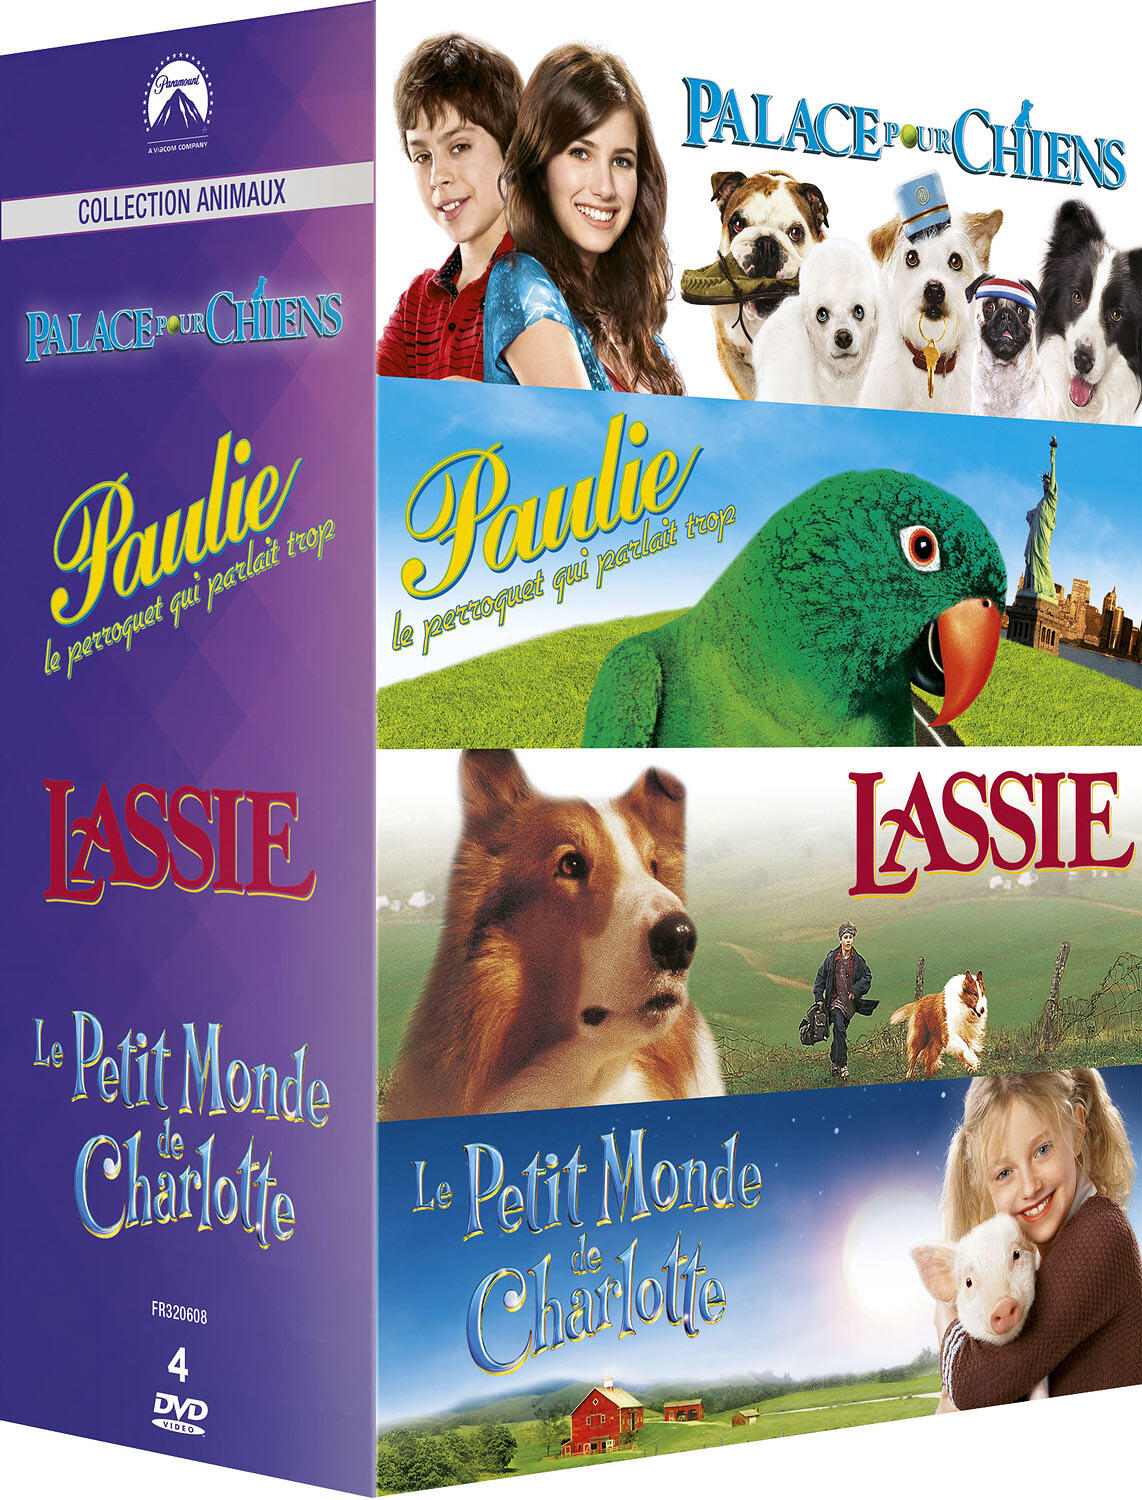 Couverture de : Paramount Collection Animaux : Palace pour chiens + Paulie le perroquet qui parlait trop + Lassie + Le petit monde de Charlotte